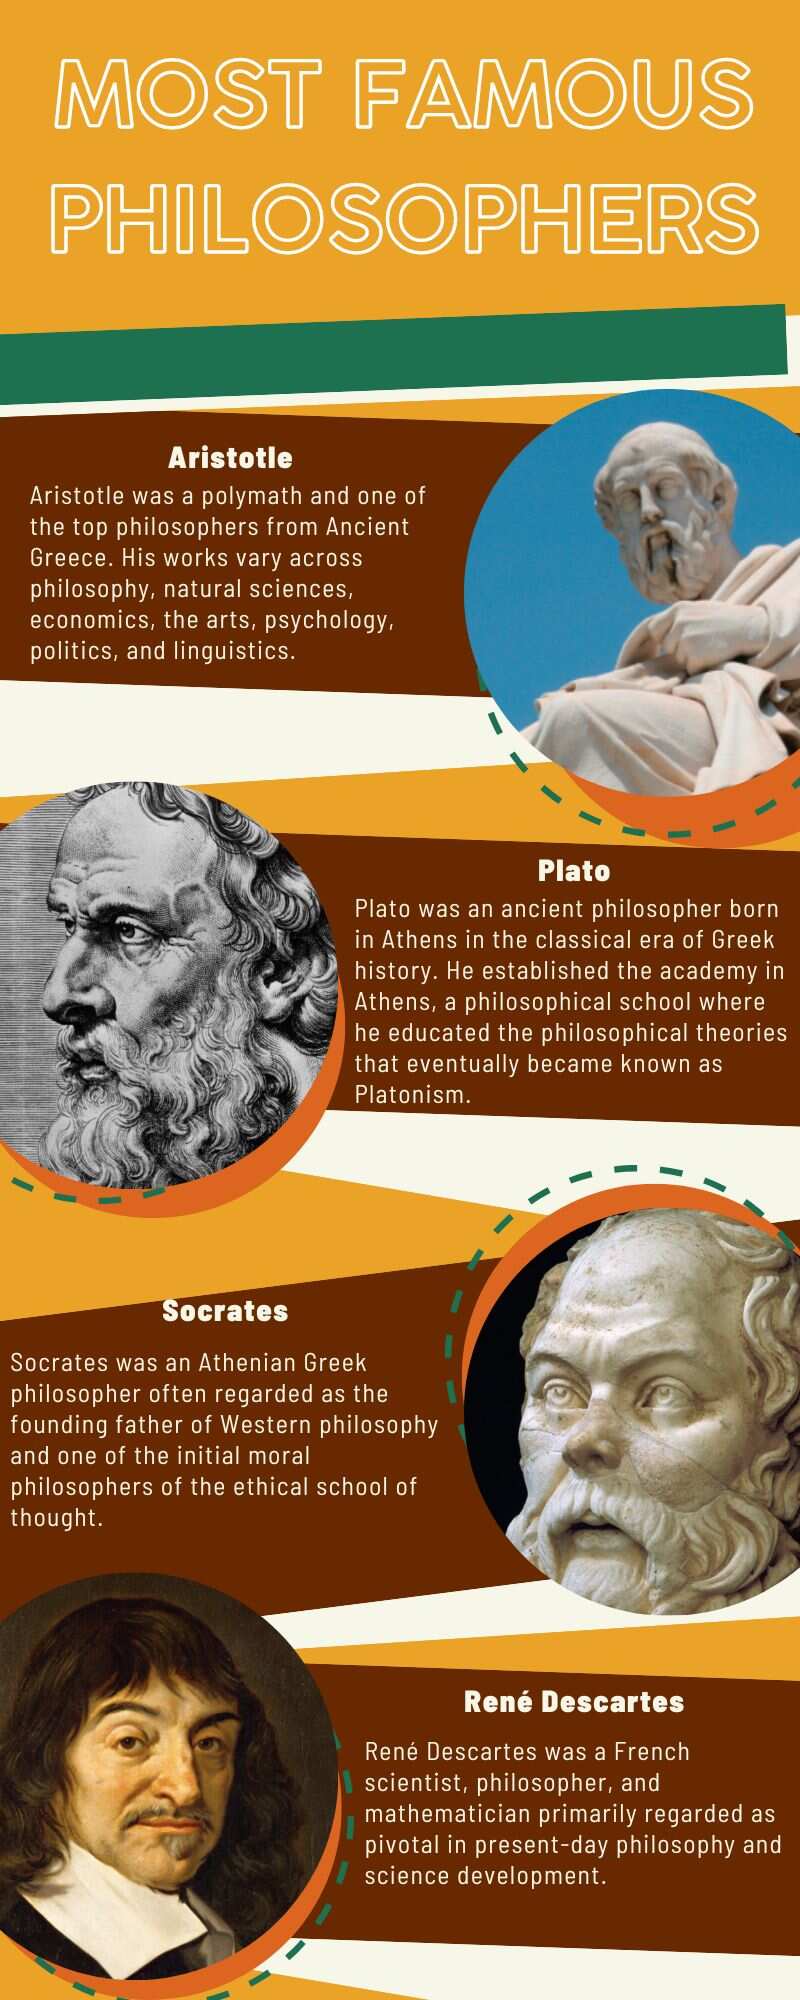 Most famous philosophers